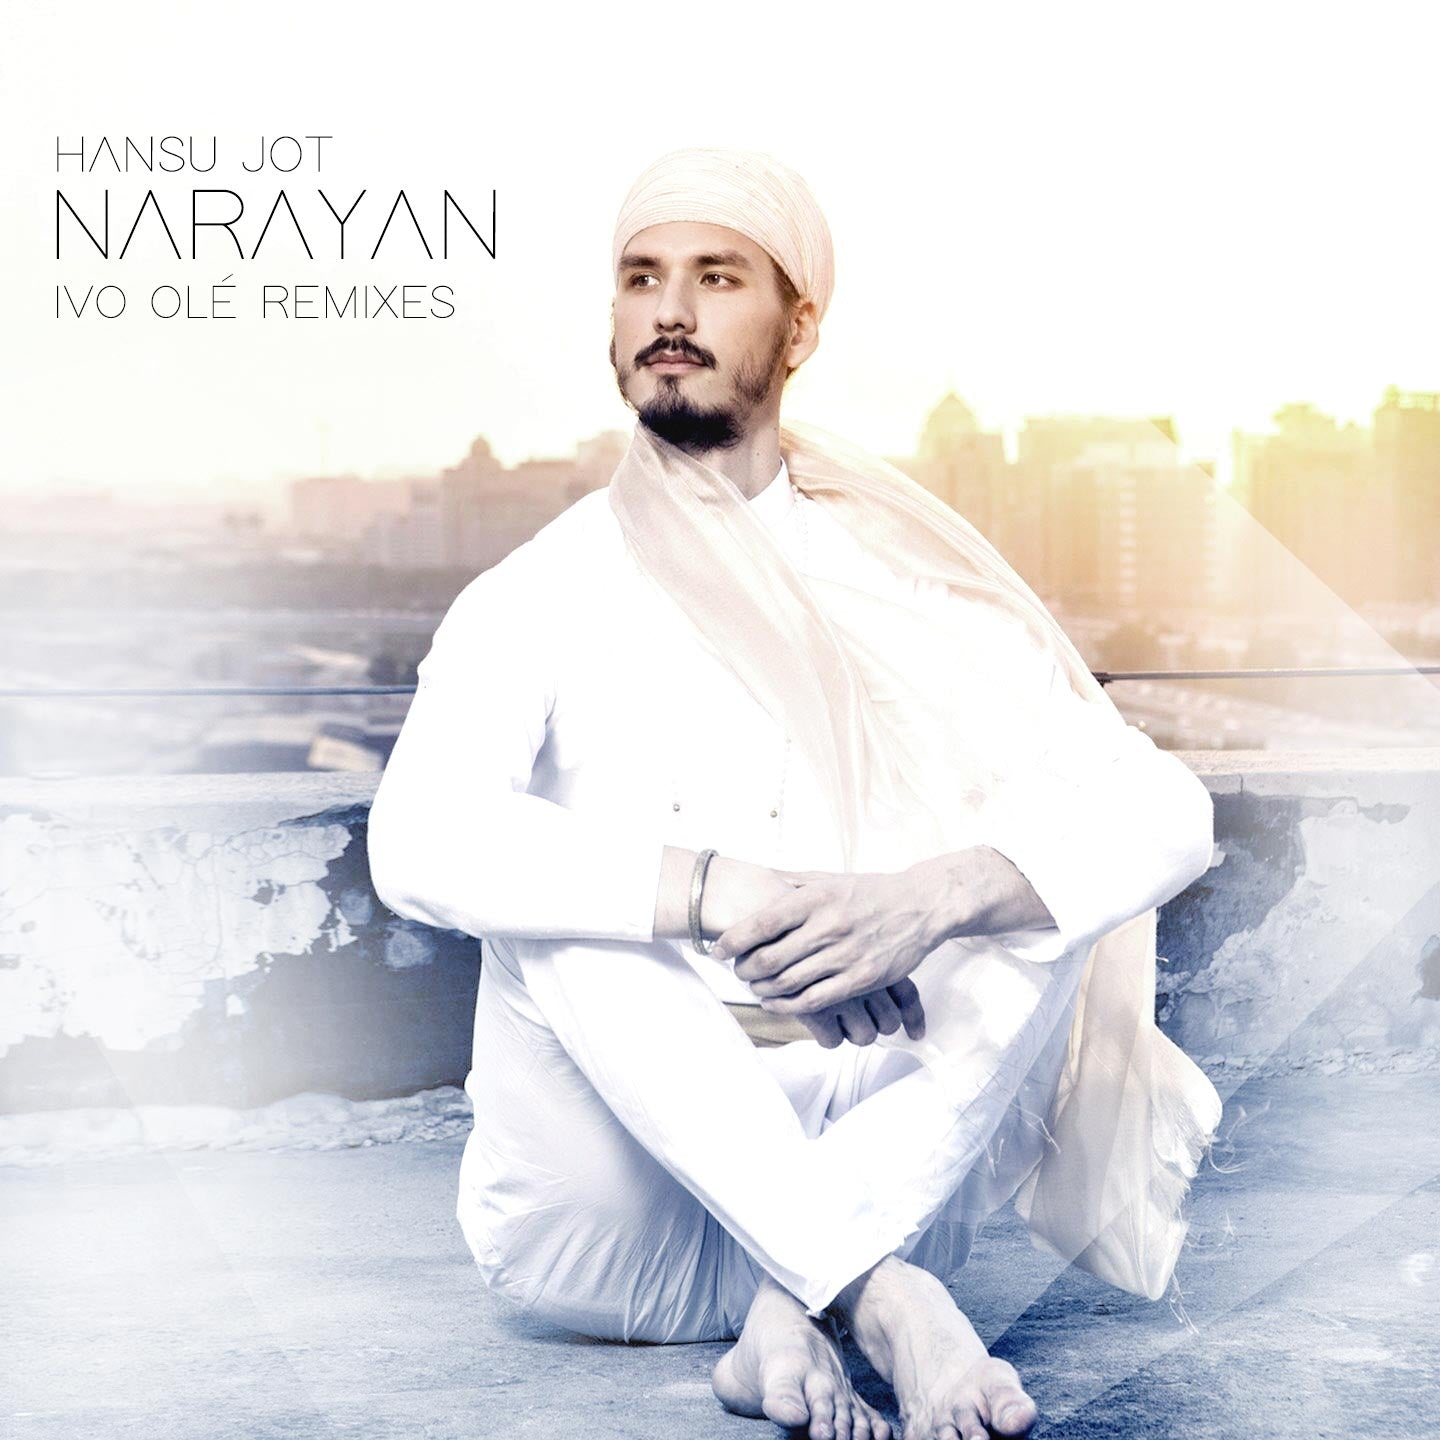 Narayan Ivo Ole Remixe - Hansu Jot - komplett